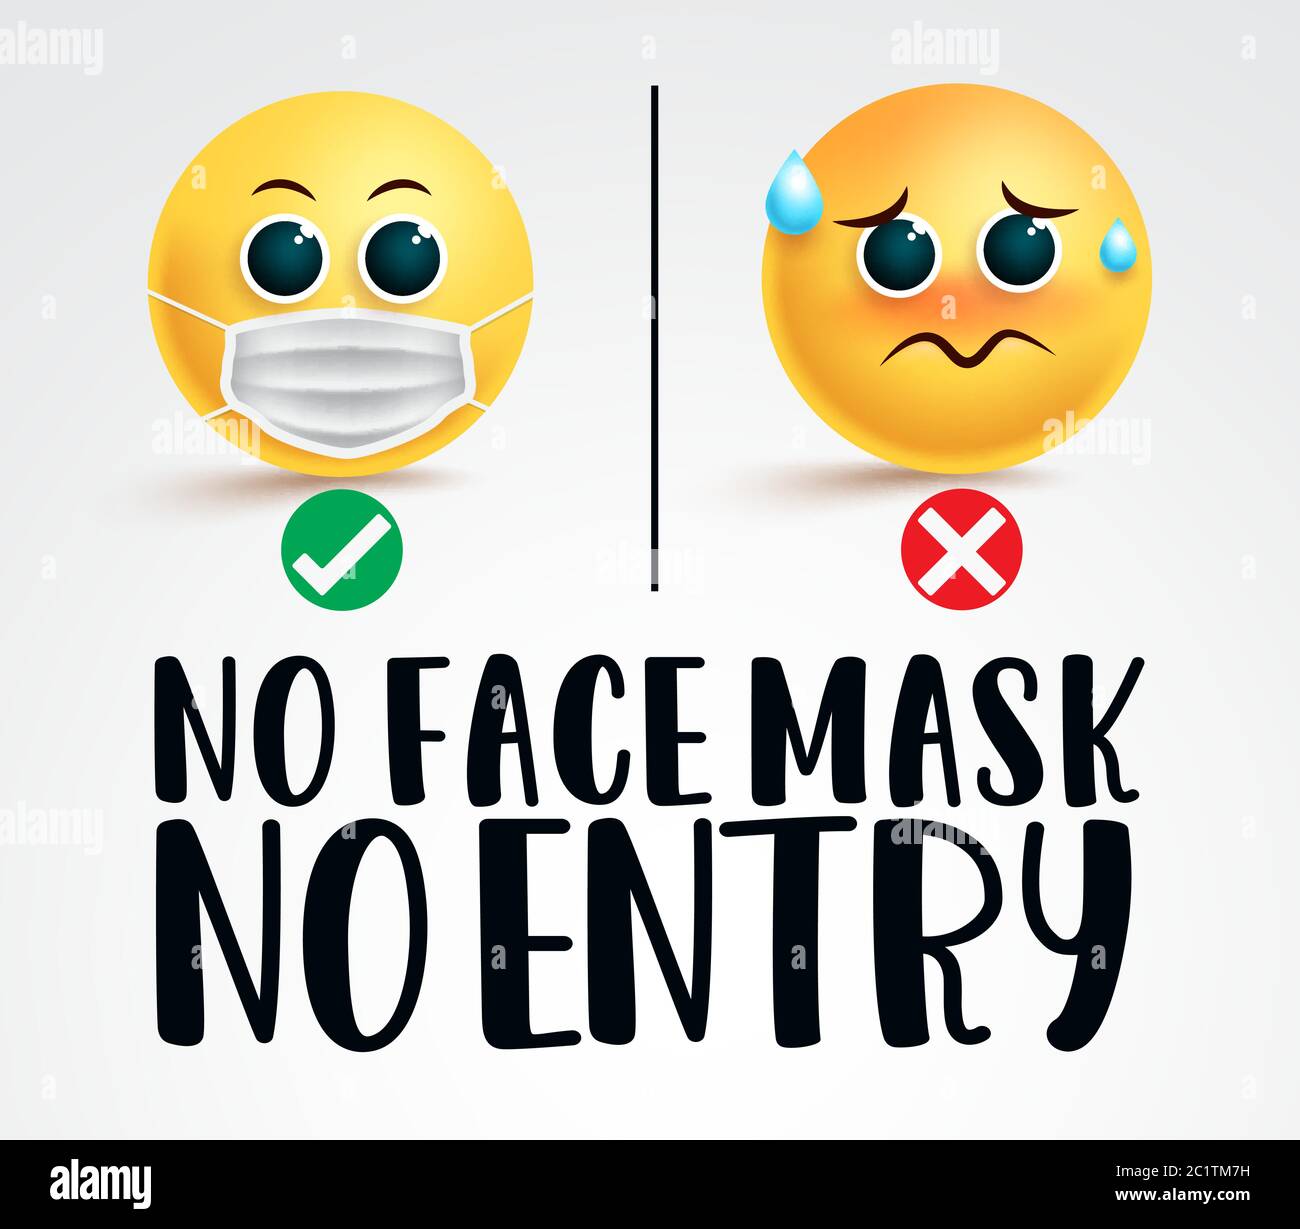 Smiley Gesichtsmaske Signage Vektor-Design. Keine Gesichtsmaske kein Eintragungstext mit zwei Emojis, die eine OP-Maske tragen, für die Sicherheit von covid-19. Stock Vektor